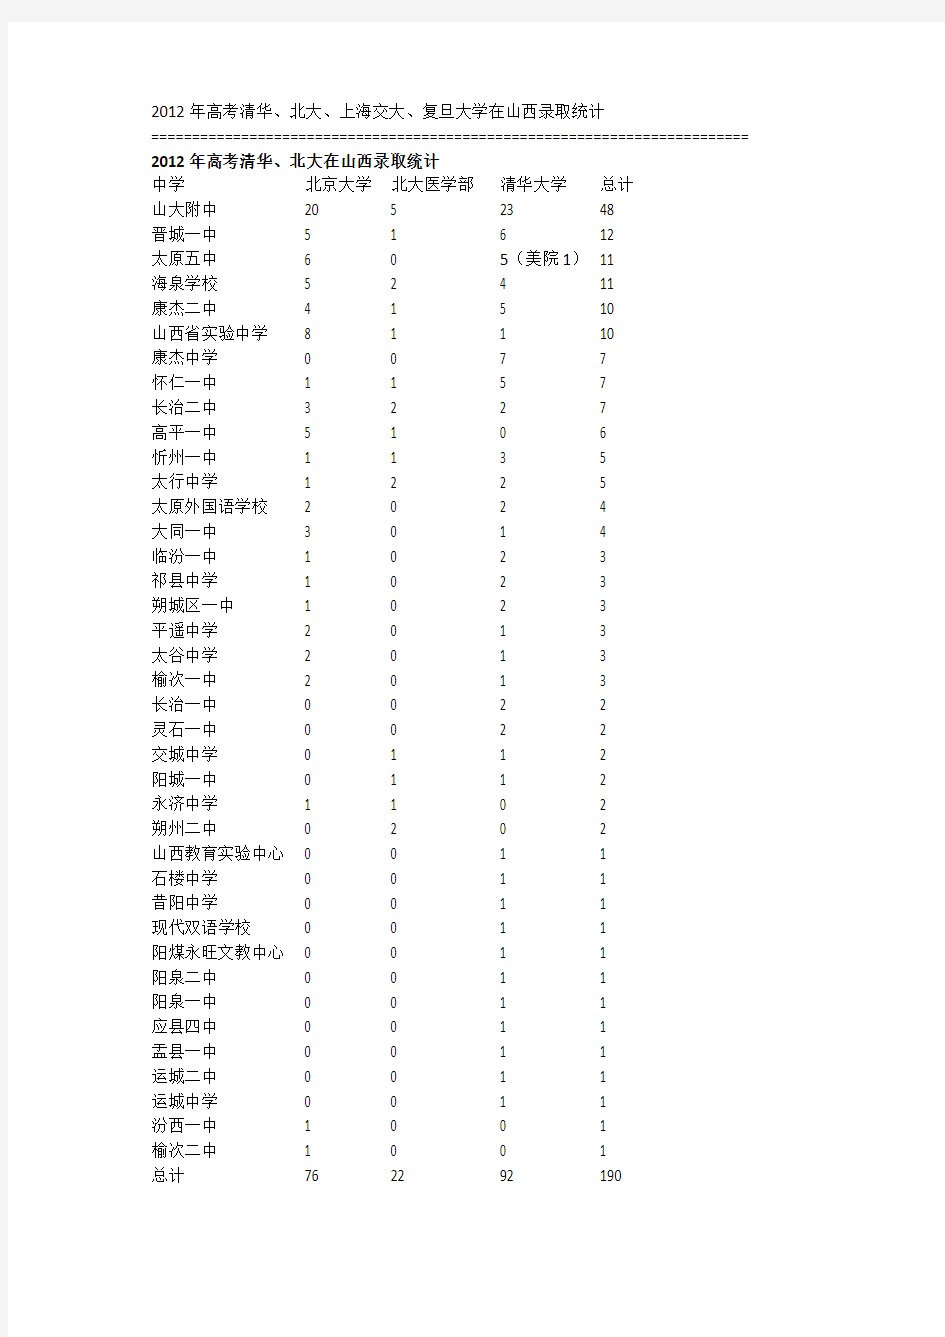 2012年山西高考清华、北大、上海交大、复旦大学录取人数分布